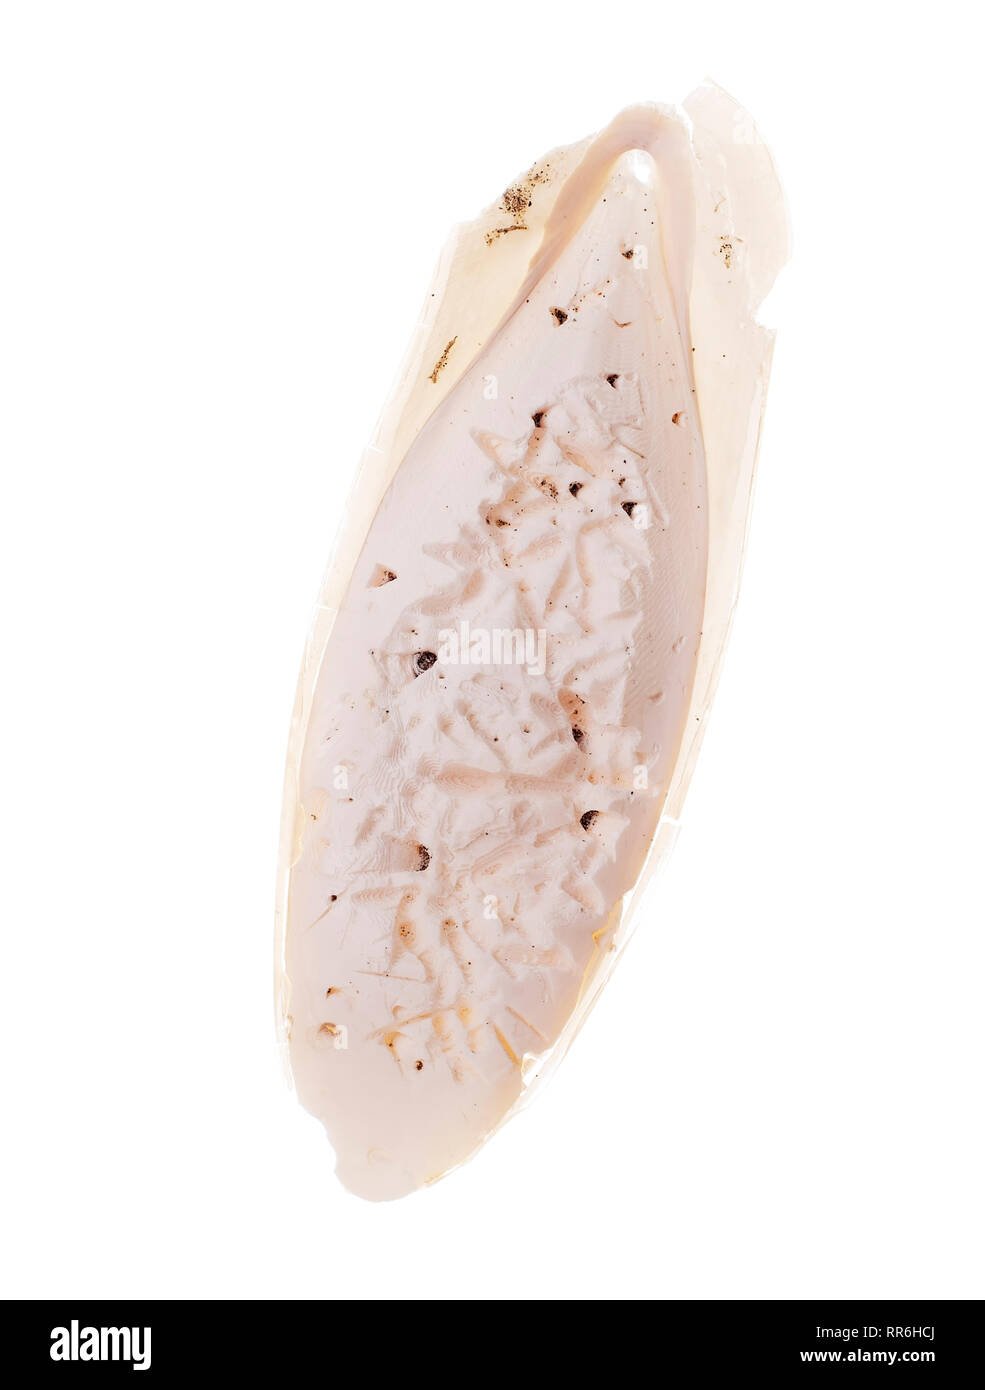 L'os de seiche naturel trouvé, aka de seiche, la coquille interne de céphalopode. Isolé sur fond blanc. Déjà picotés par les oiseaux sauvages. Banque D'Images